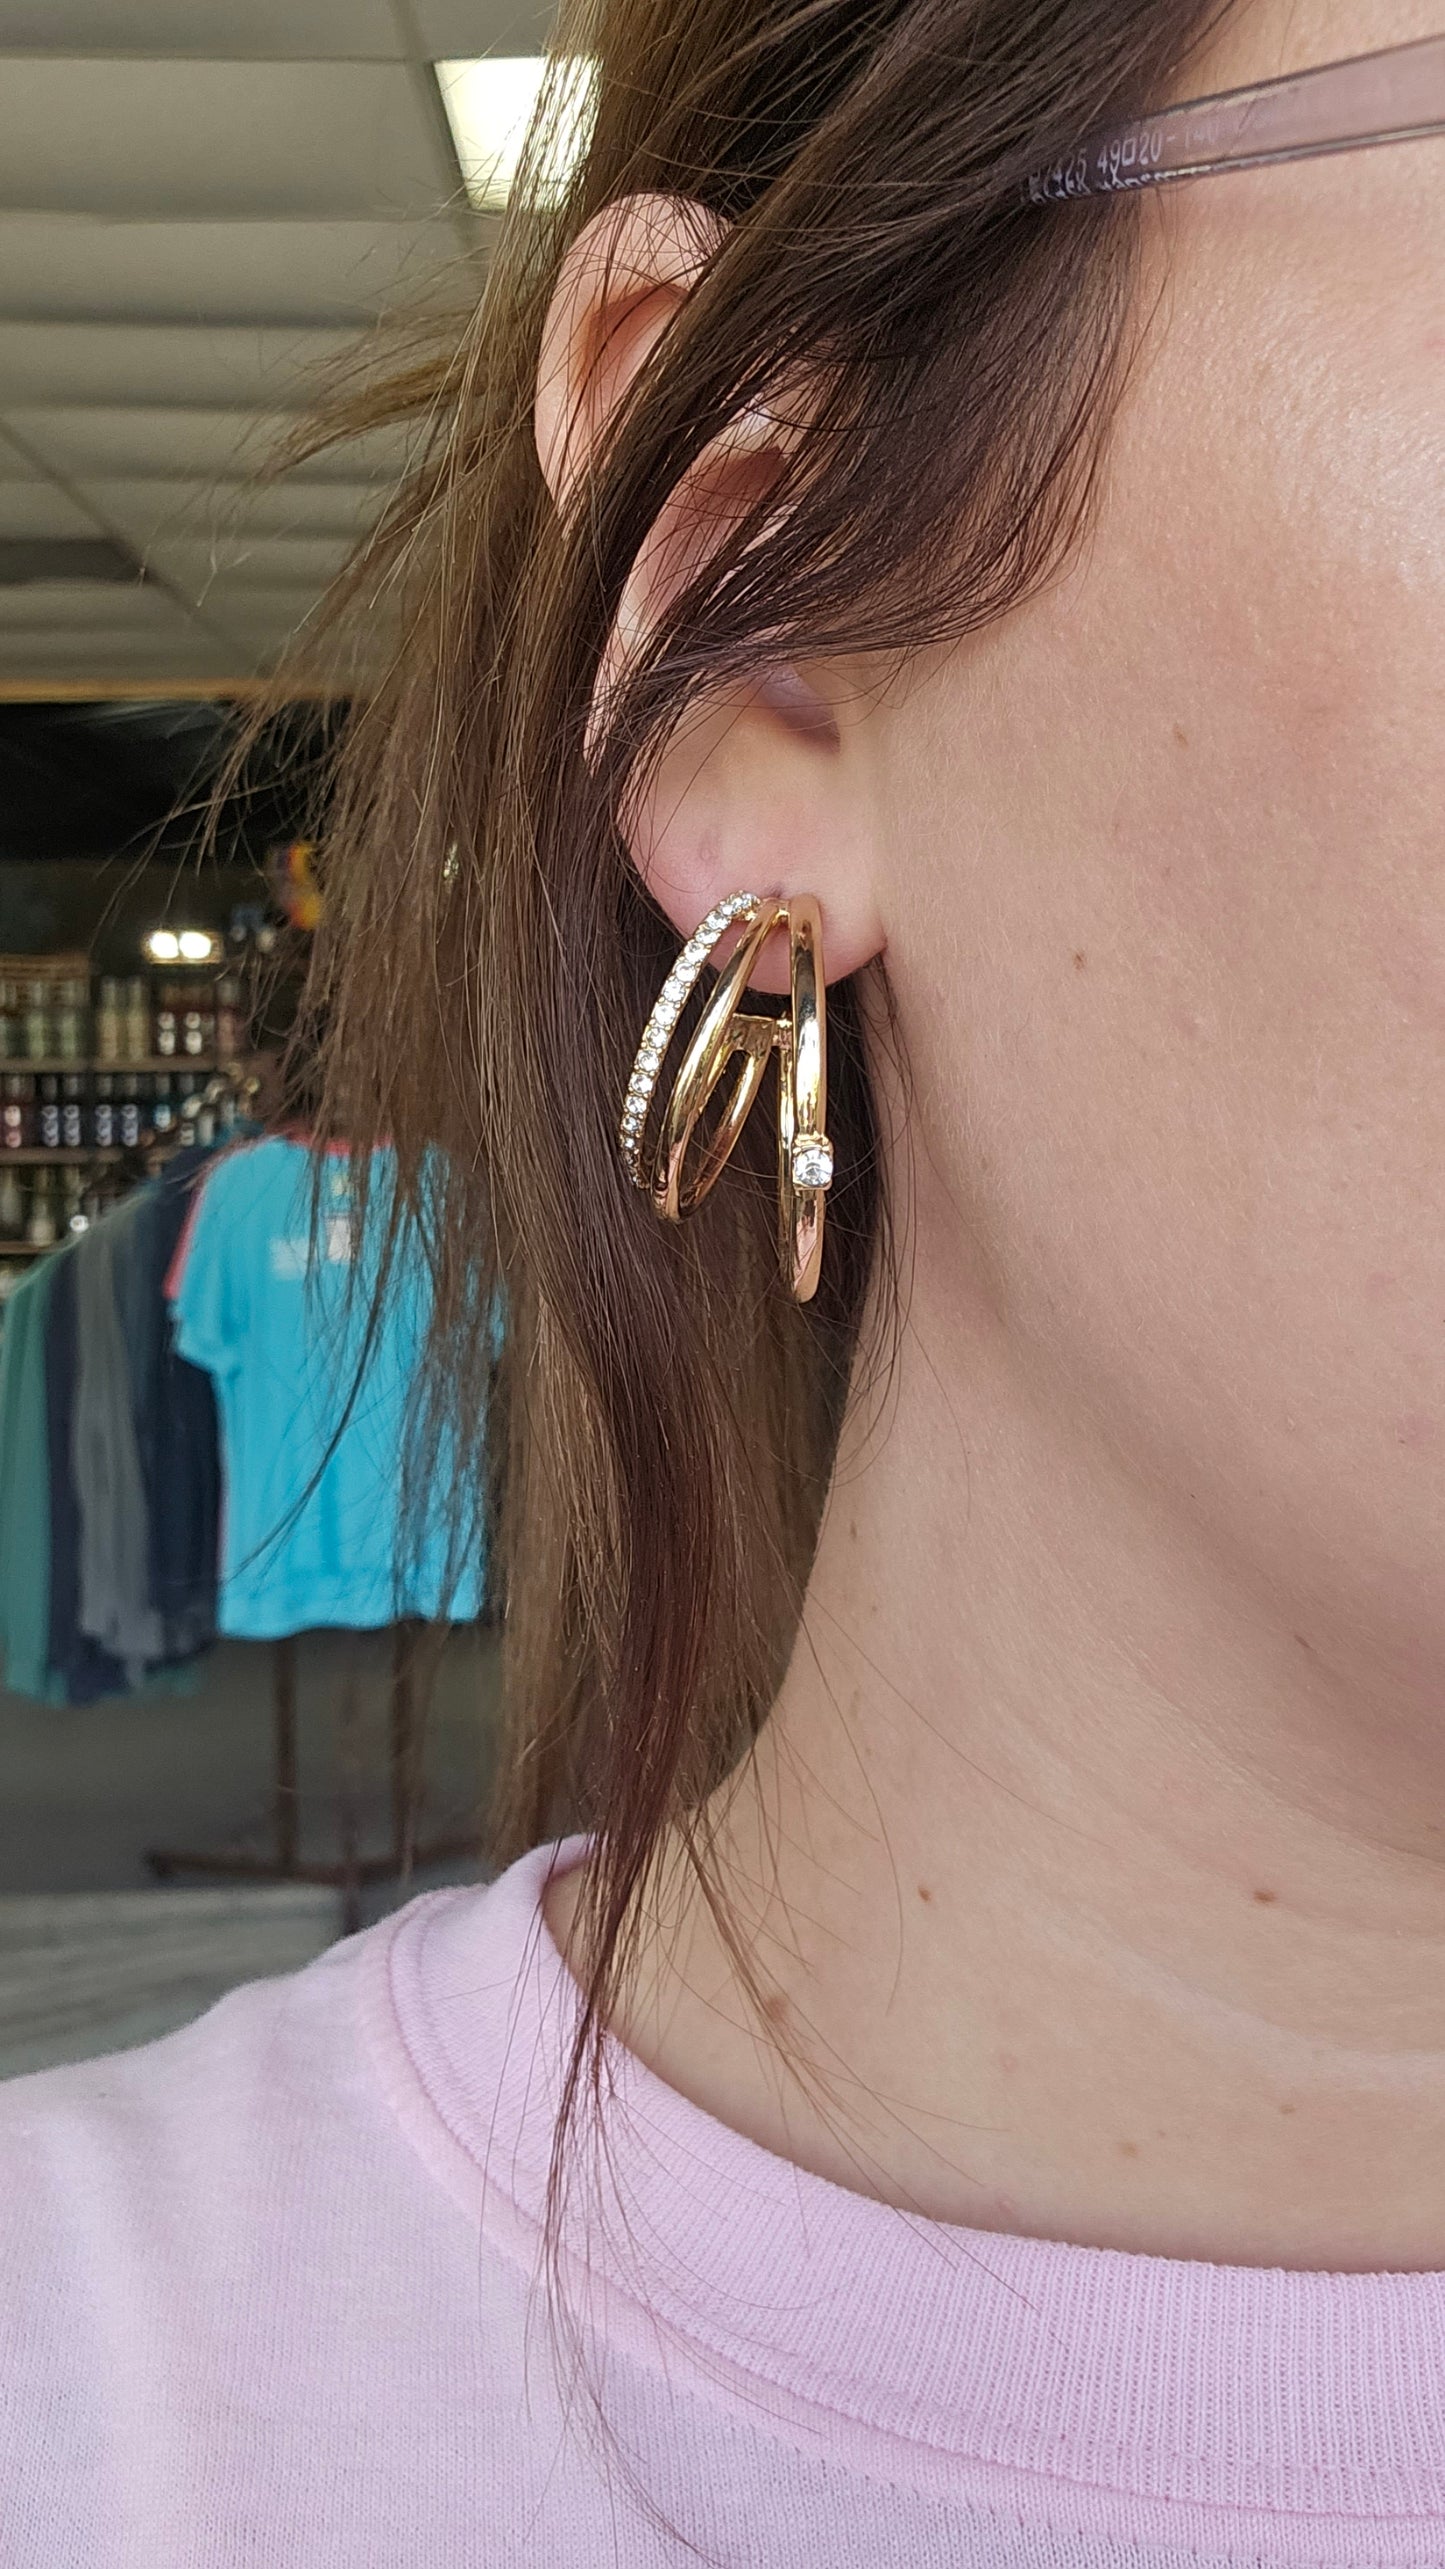 Triple Hoop Rhinestone Earrings